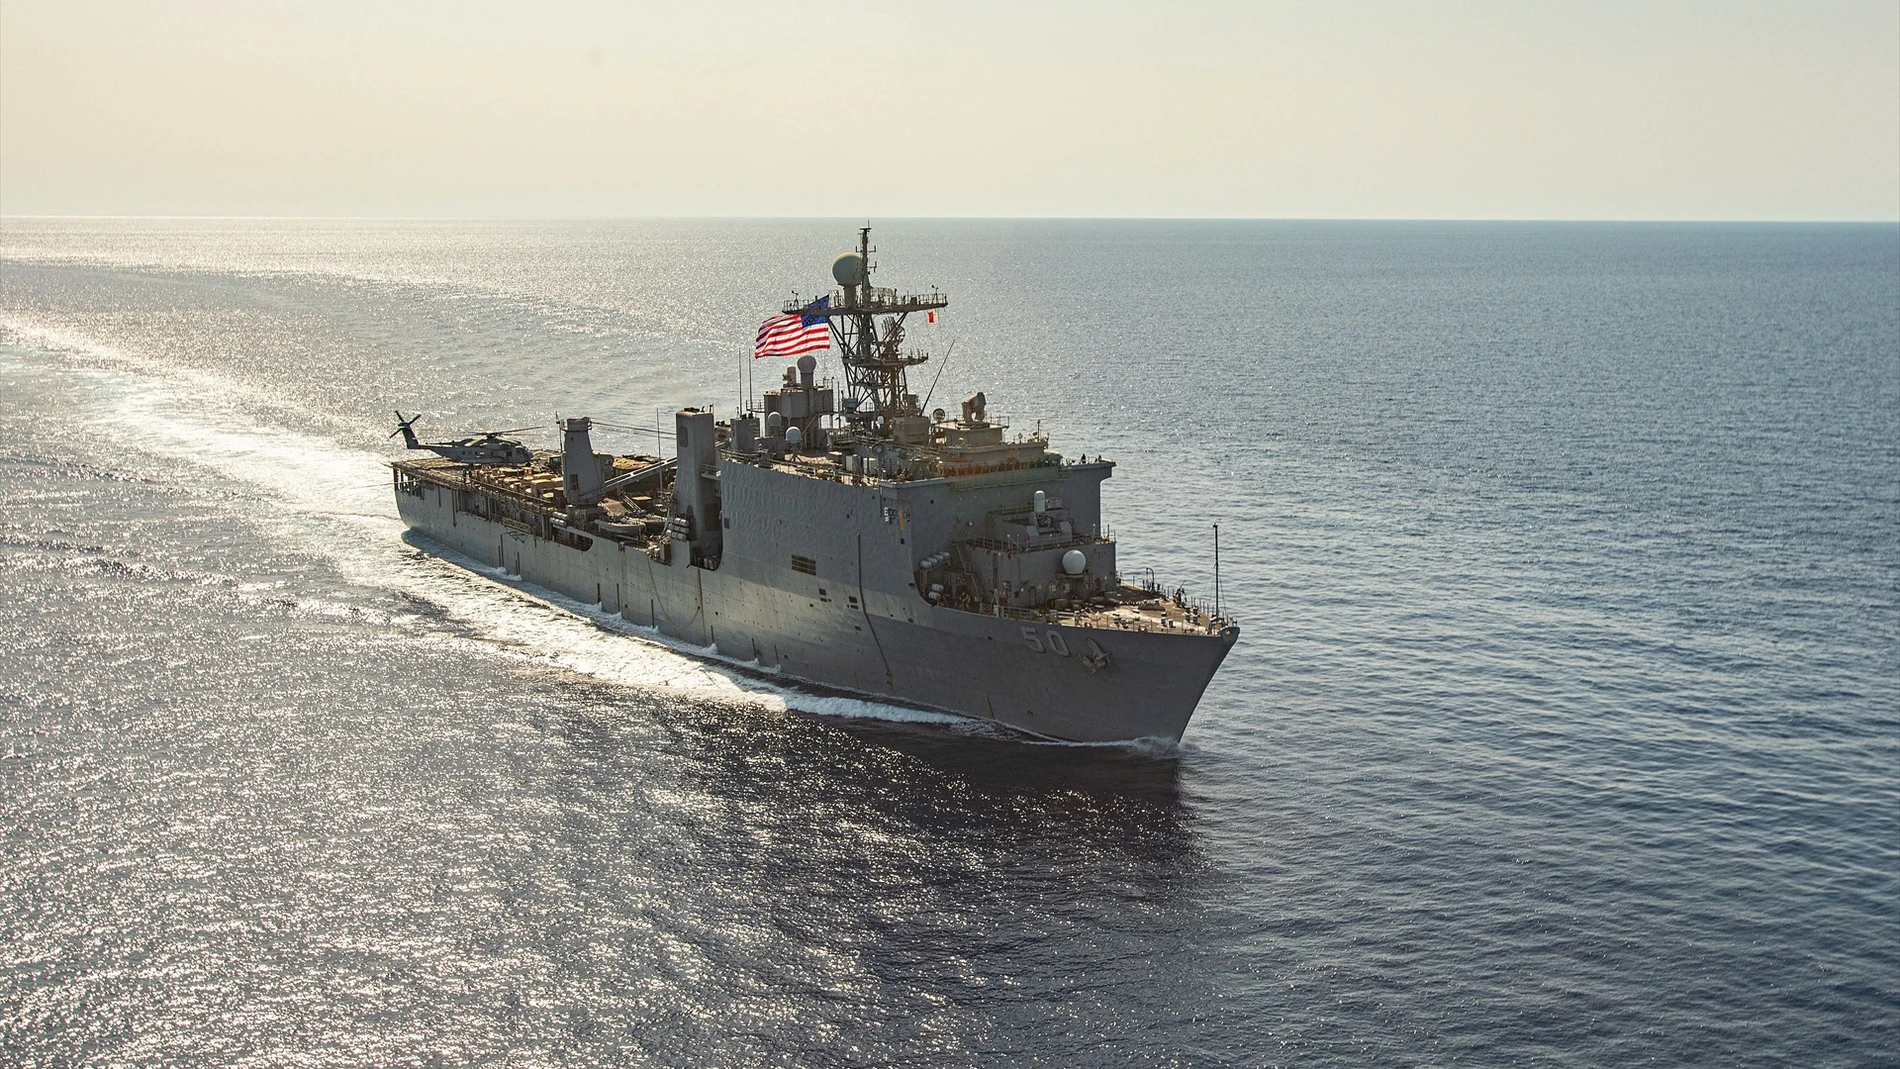 Foto de archivo del buque USS Carter Hall, que atraviesa el Mar Rojo.